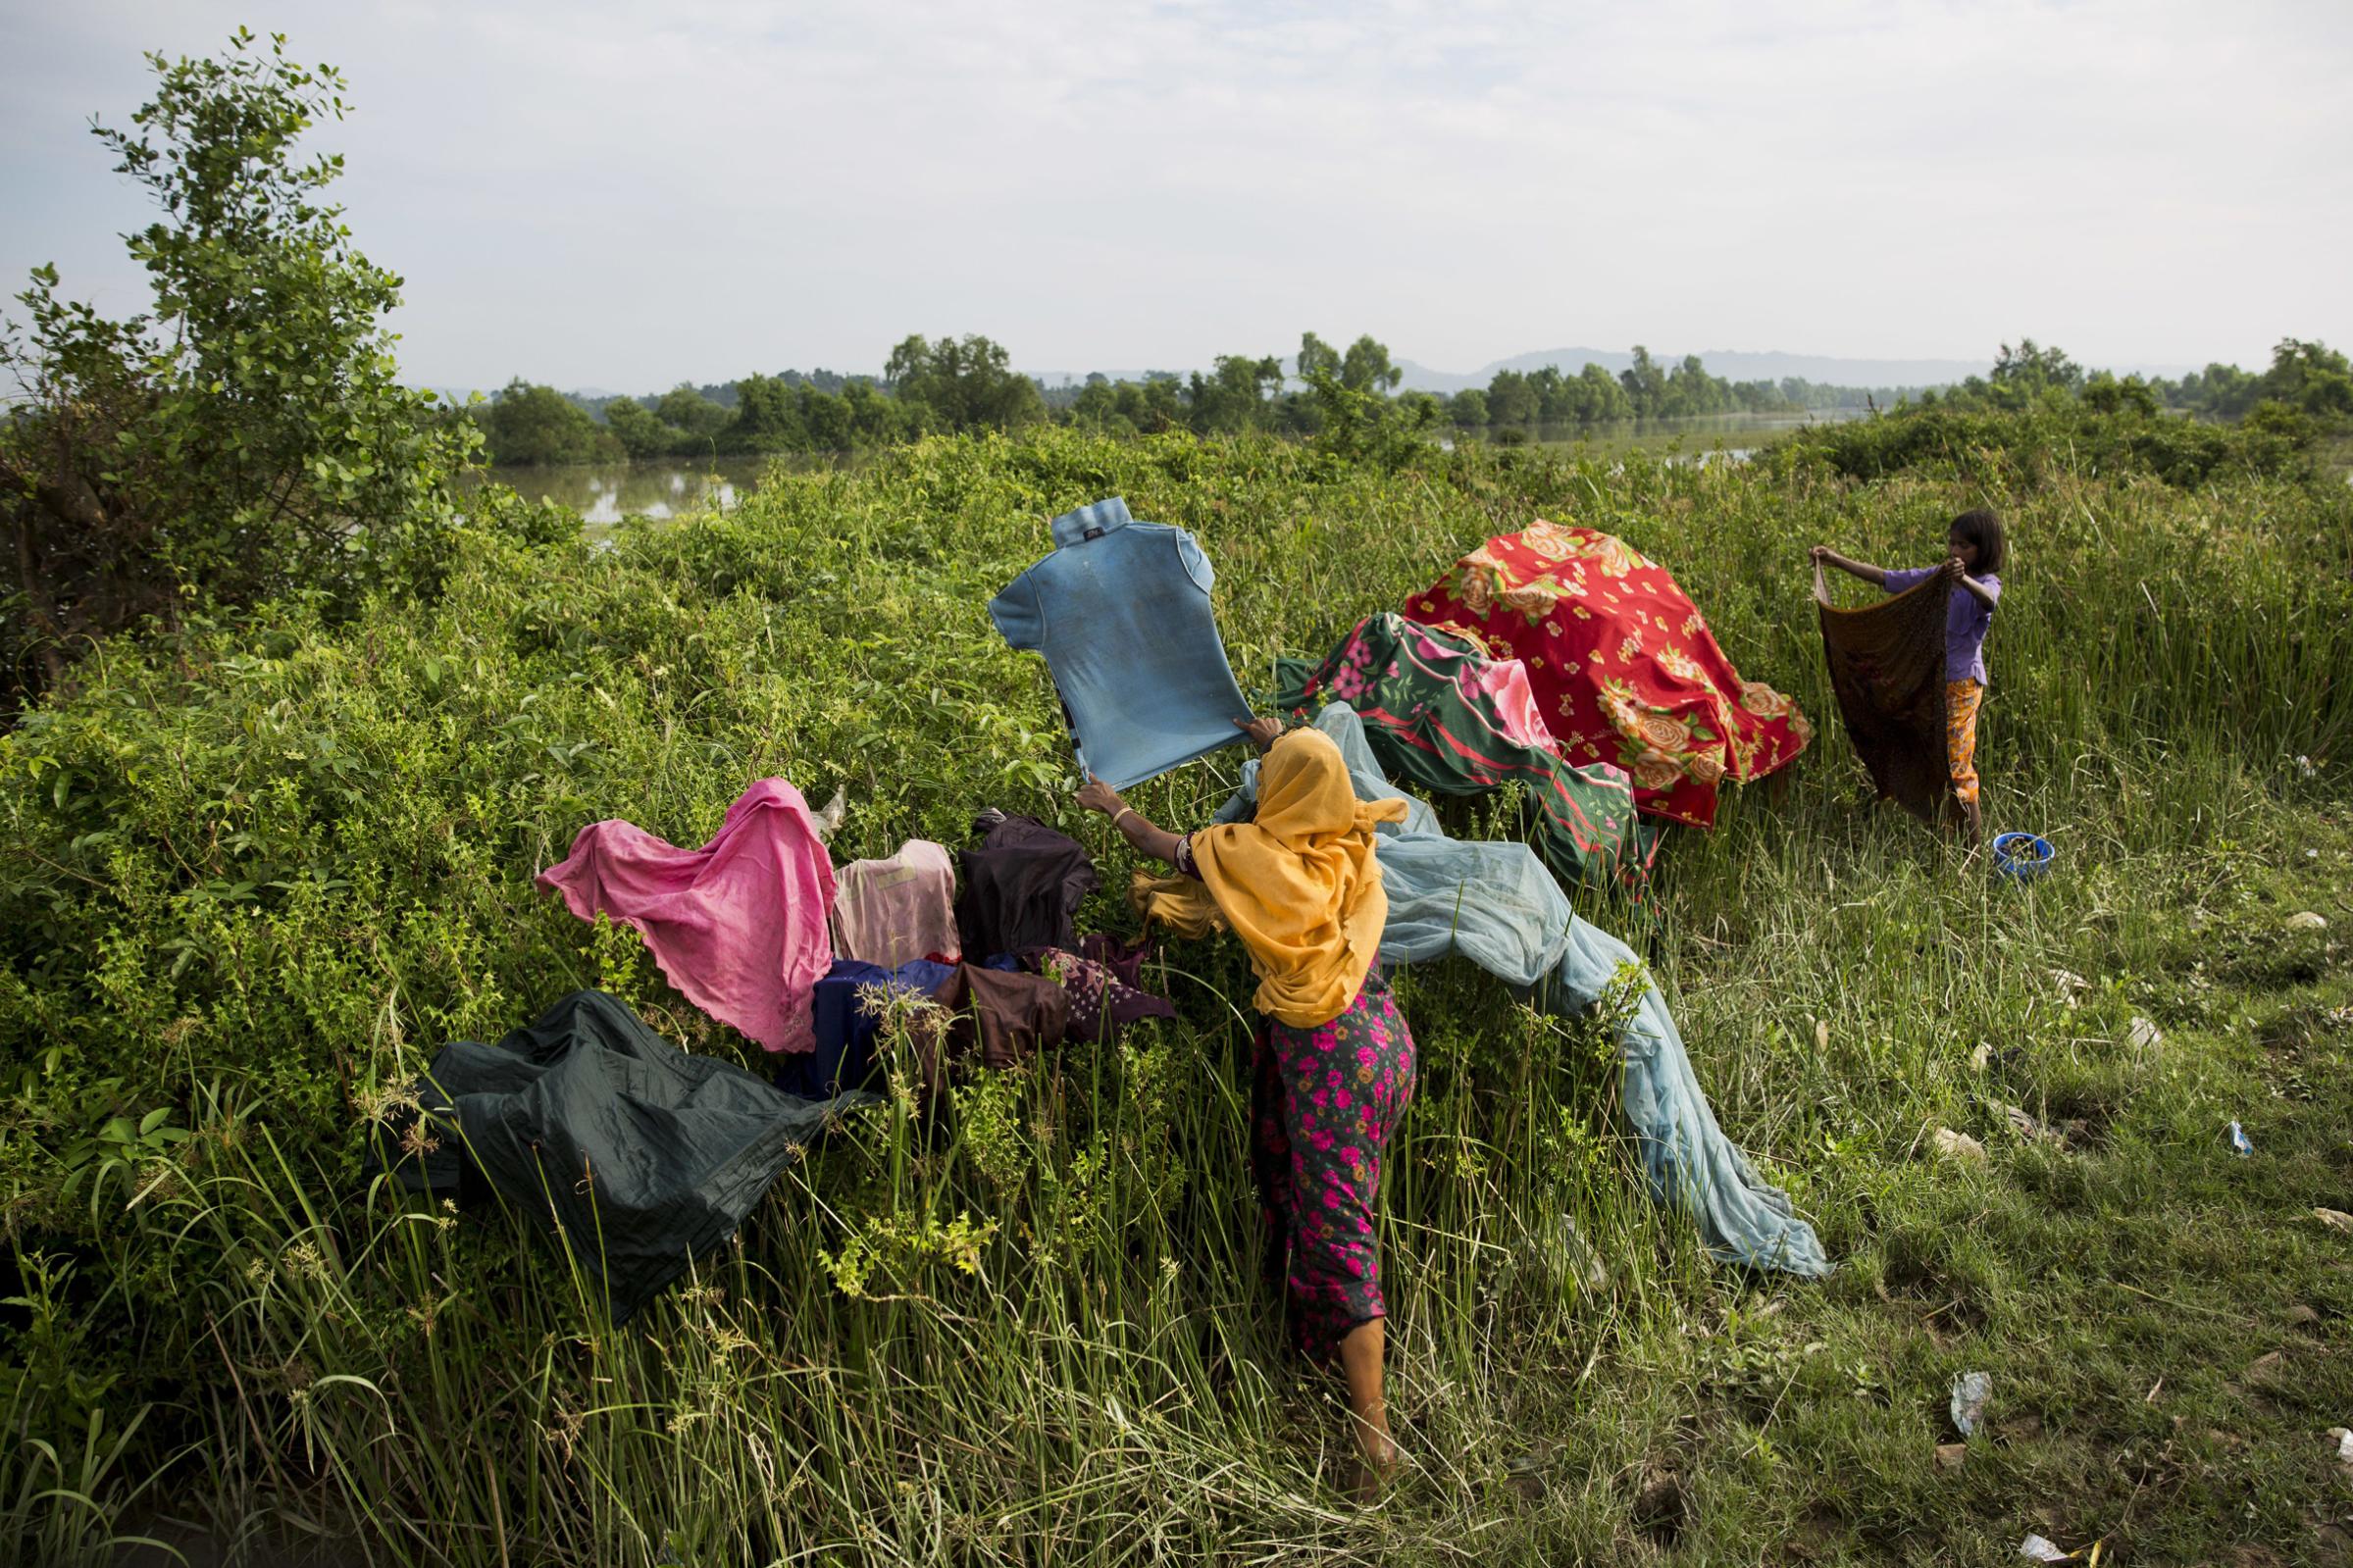 rohingya-woman-dry-clothes-bangladesh-river